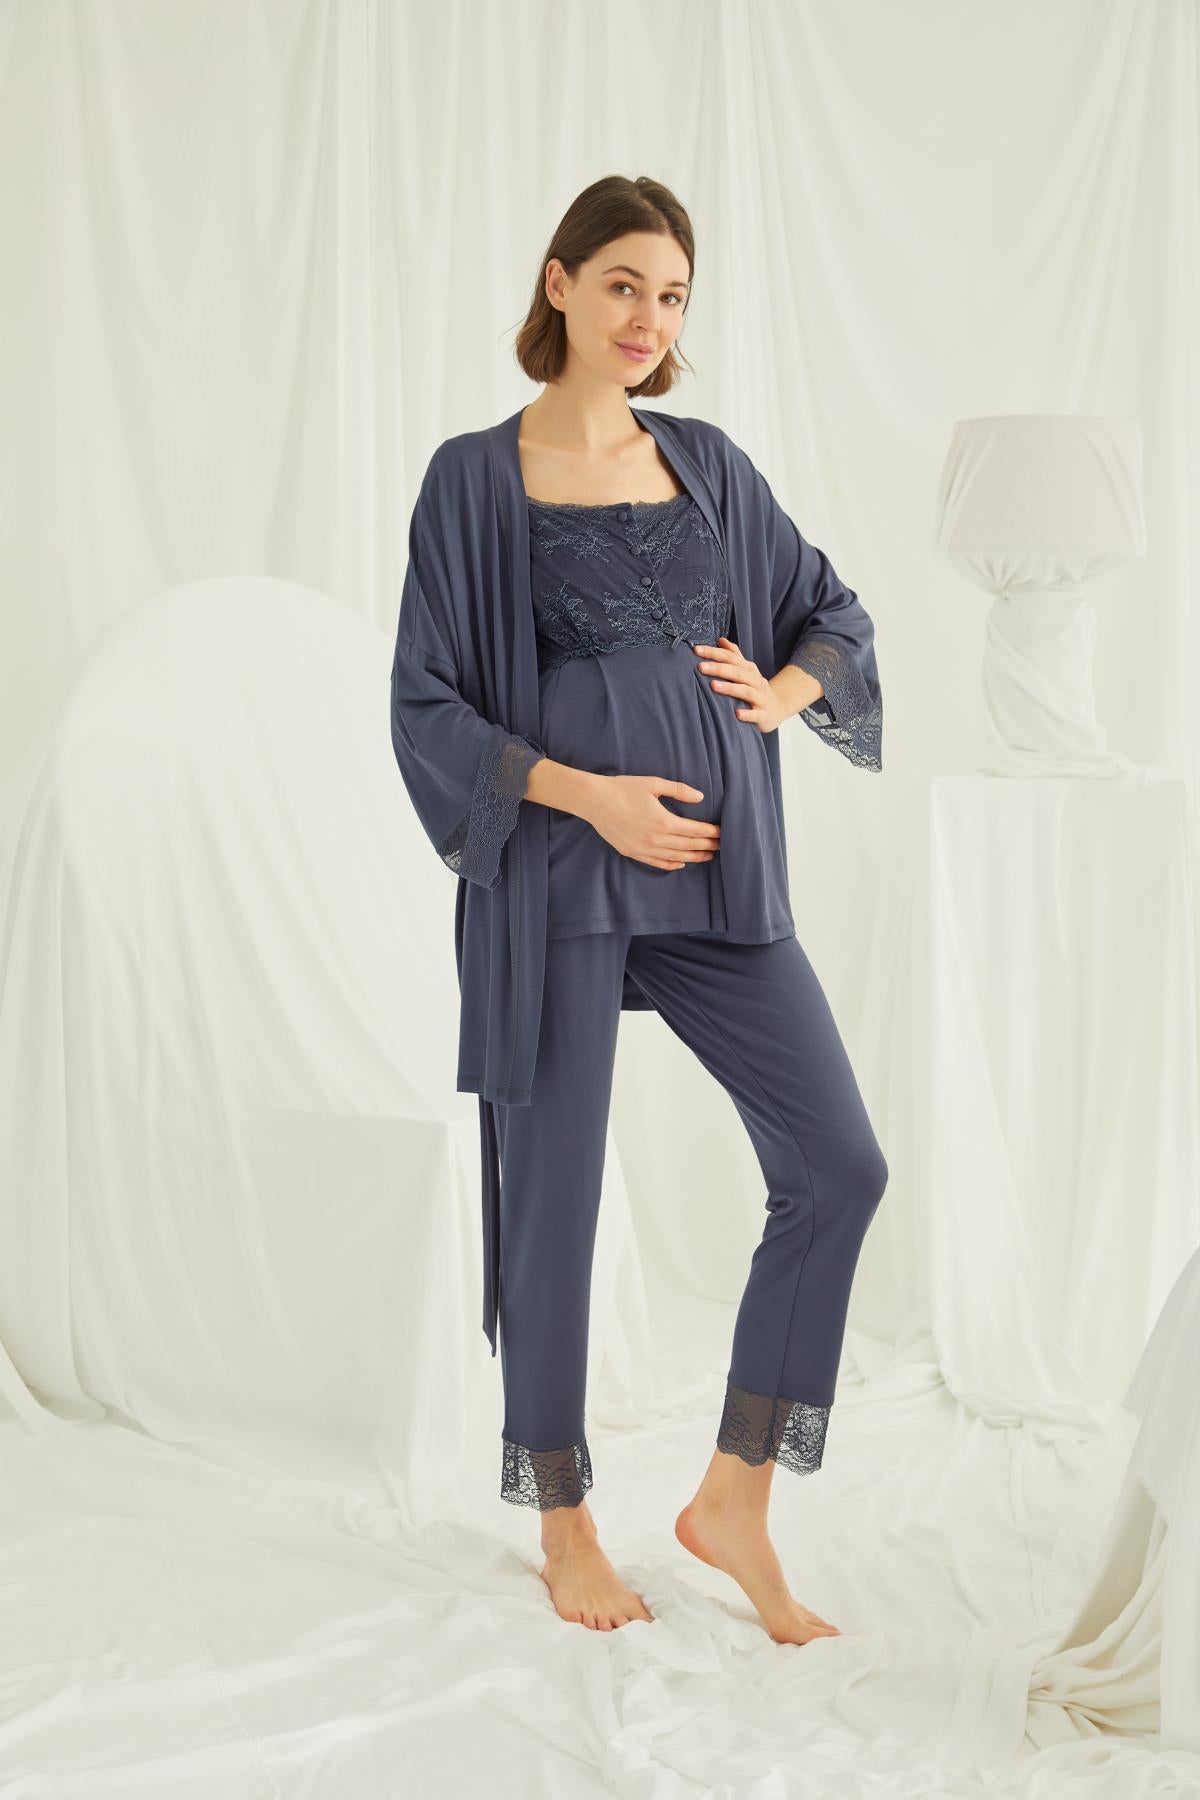 Lace 3-Pieces Maternity & Nursing Pajamas With Robe Navy Blue - 18211